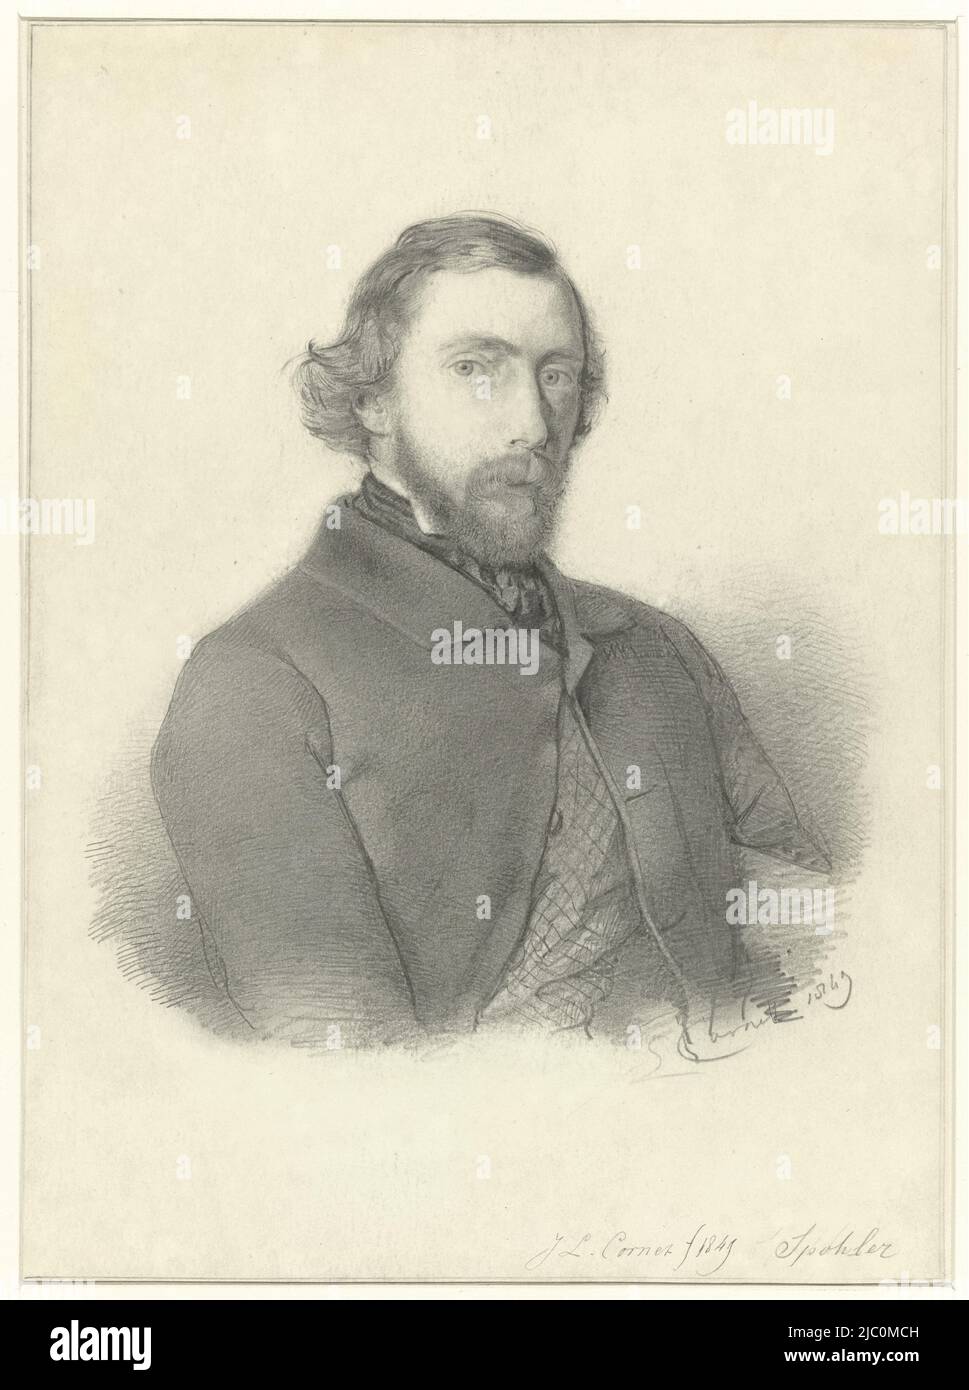 Portrait de Jan Jacob Spohler, dessinateur: Jacobus Ludovicus Cornet, 1849, papier, h 275 mm × l 202 mm Banque D'Images